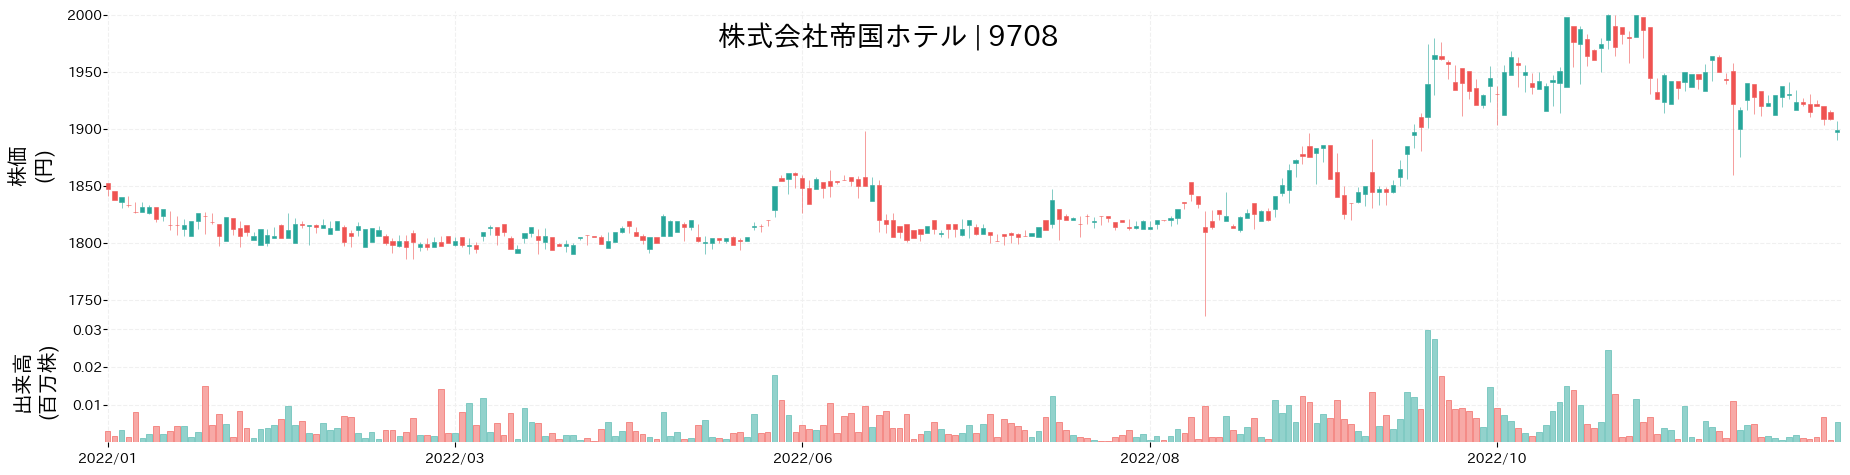 帝国ホテルの株価推移(2022)